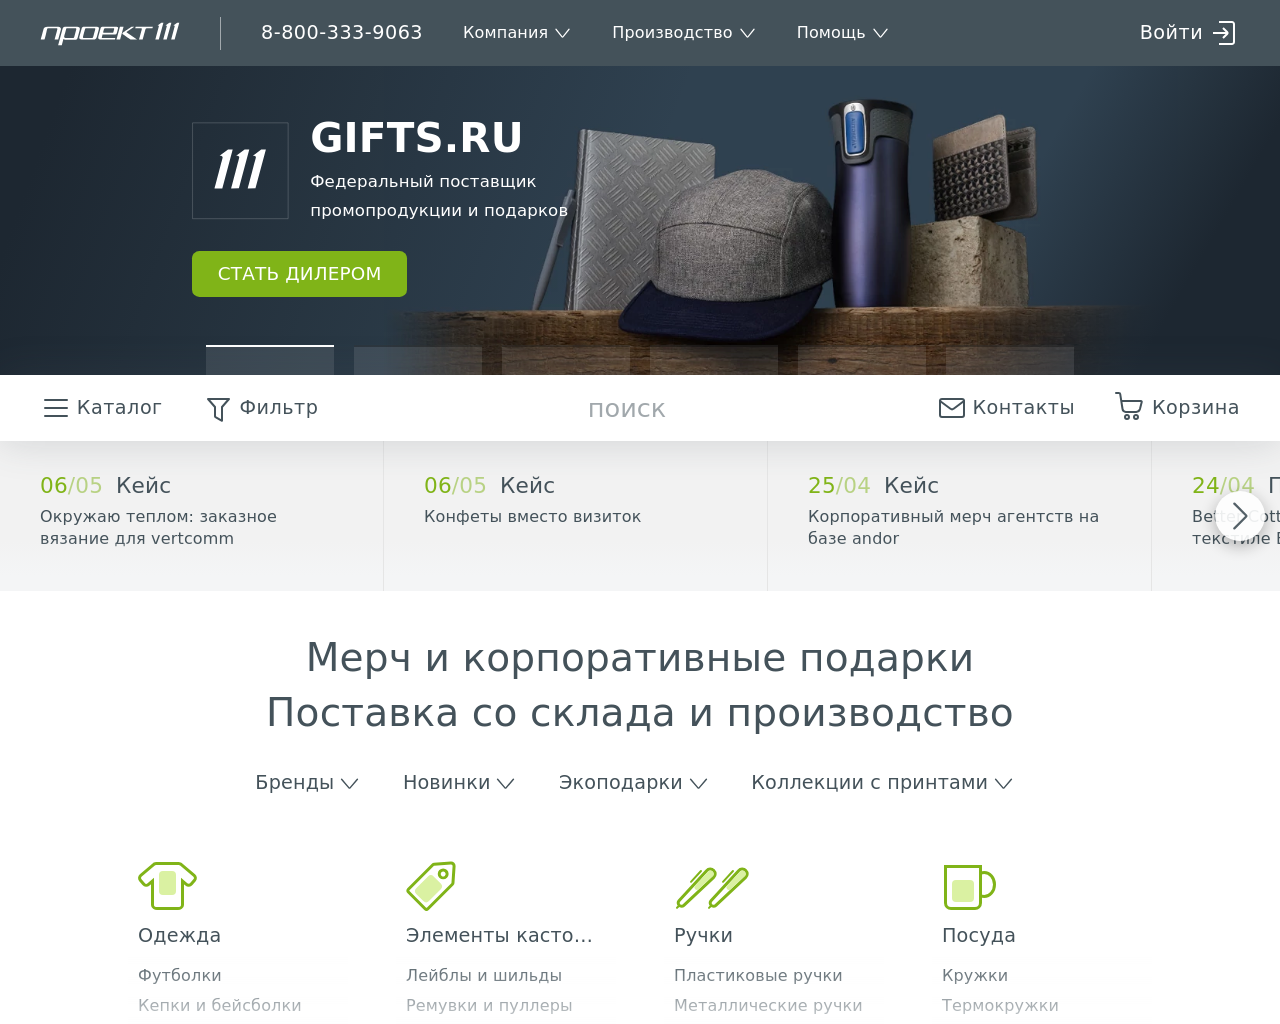 gifts.ru